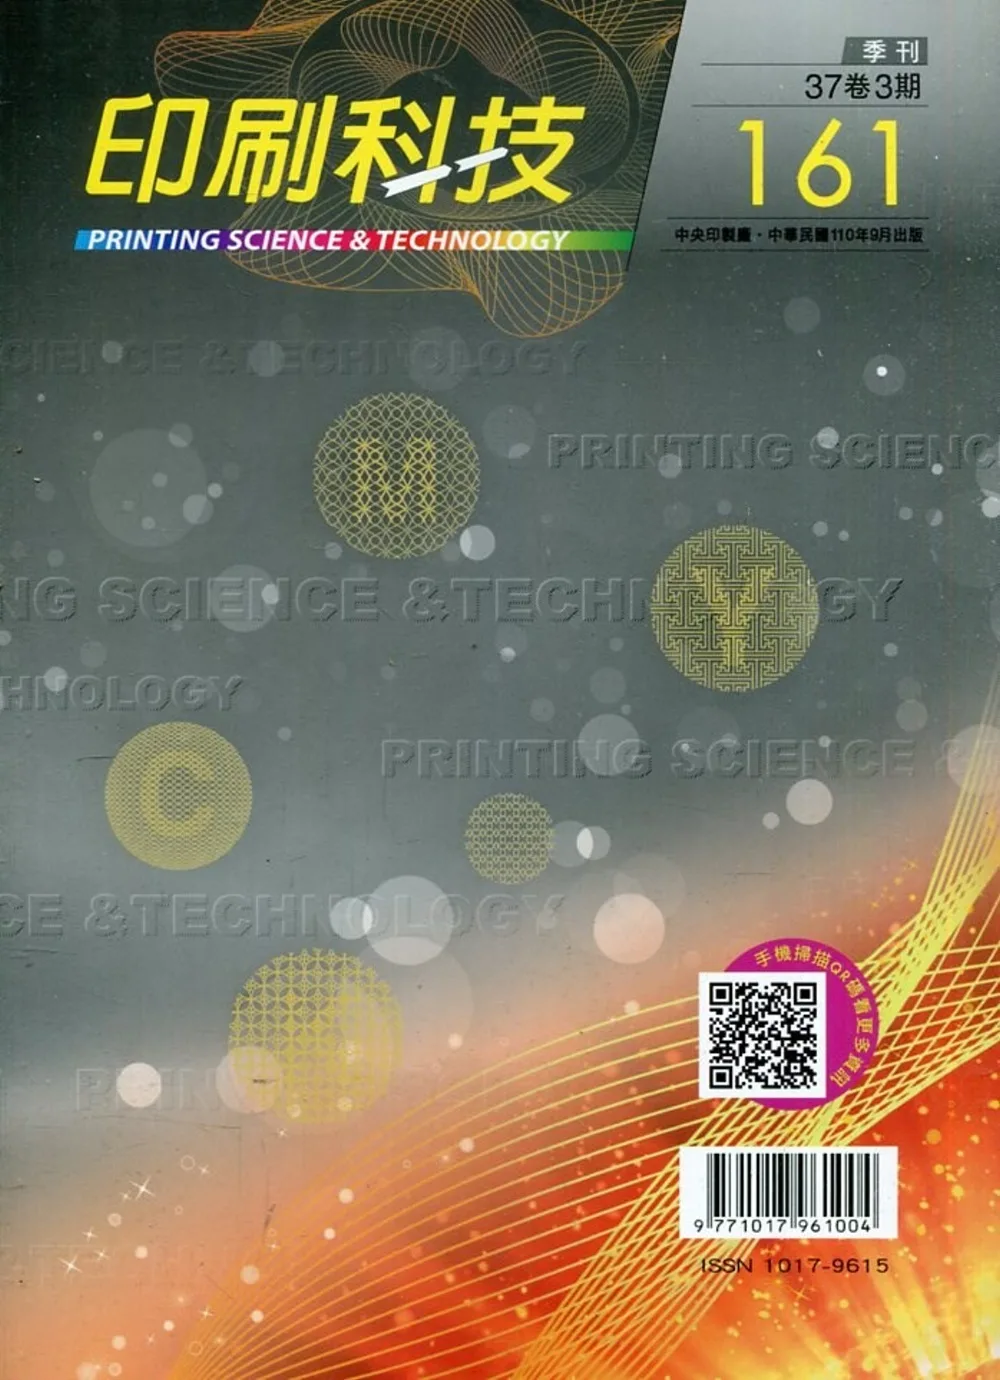 印刷科技季刊37卷3期-161